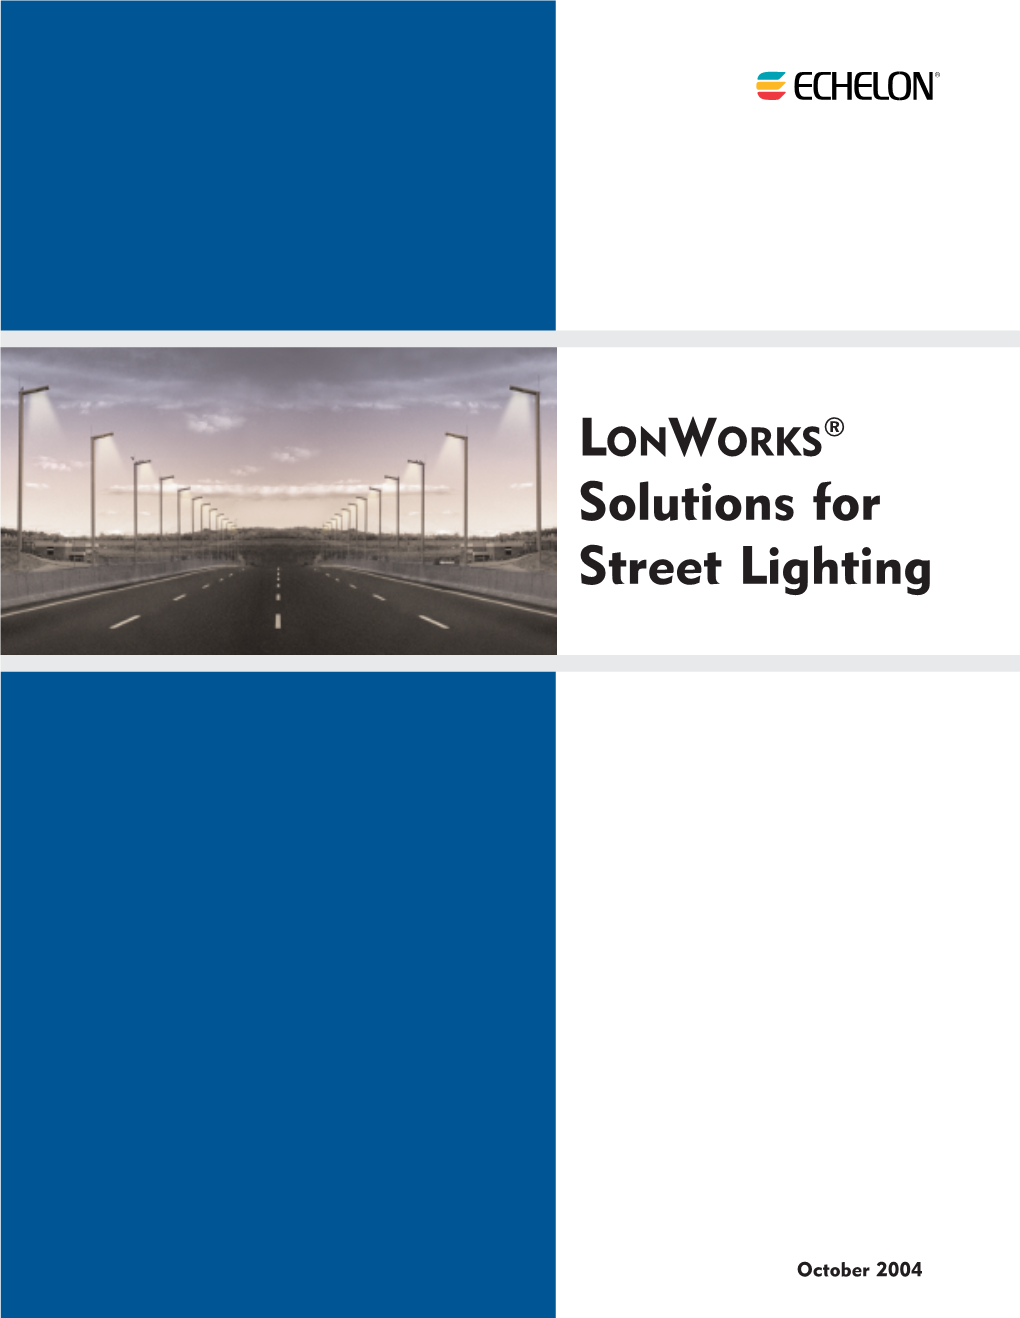 LONWORKS ® Solutions for Street Lighting